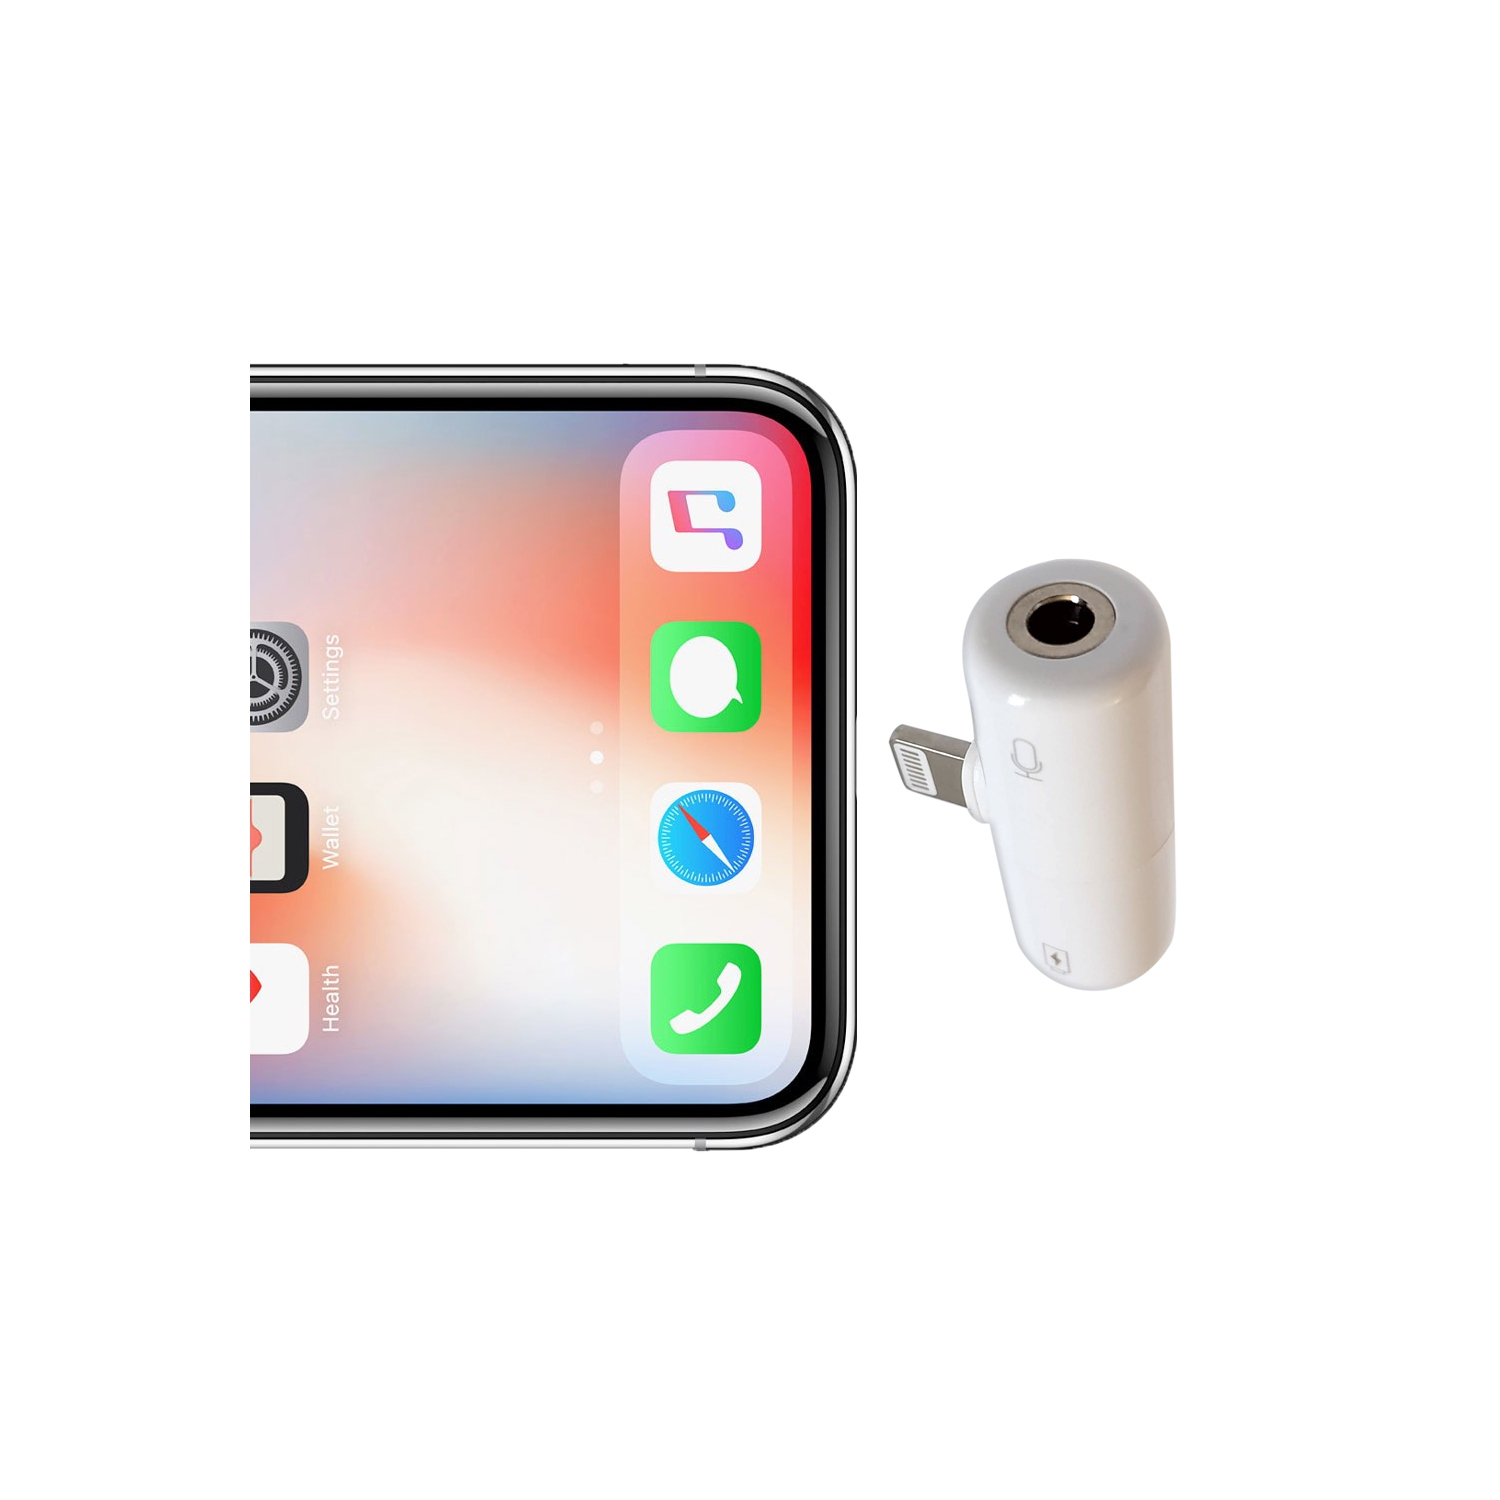 Casque Jack 3,5 mm Adaptateur pour iPhone XS/XR Prise Jack 3,5 mm Audio Splitter pour iPhone 8/8Plus/7Plus AUX Audio Prise en Charge de la Musique et du Costume de Charge pour Tous Les systèmes iOS 